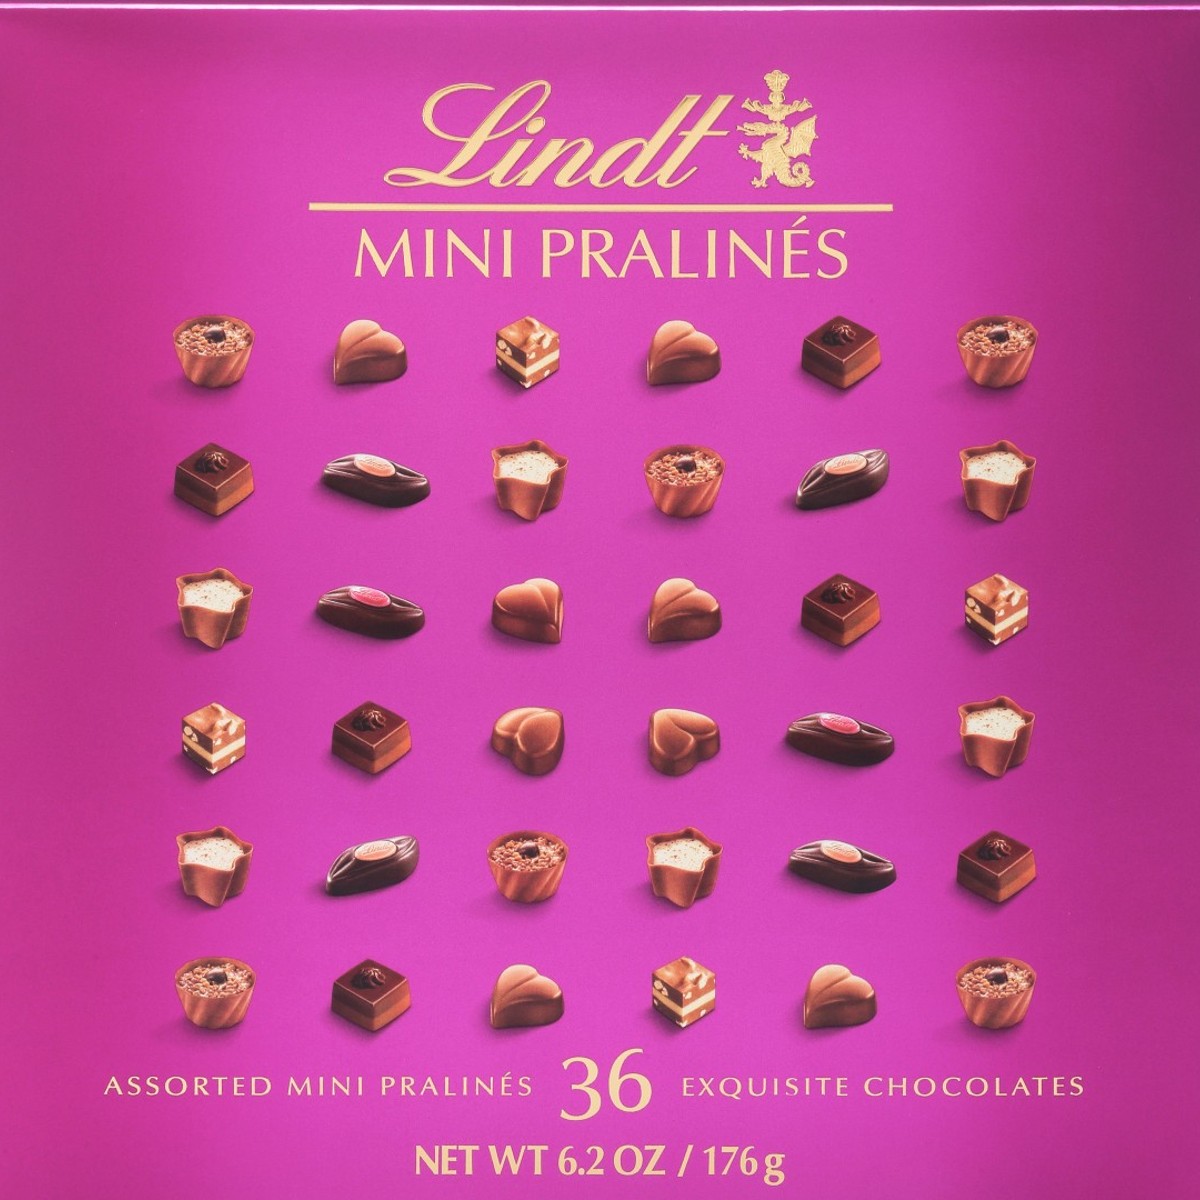 Lindt - Creation Pistachio Almonds, 150g (5.3oz)